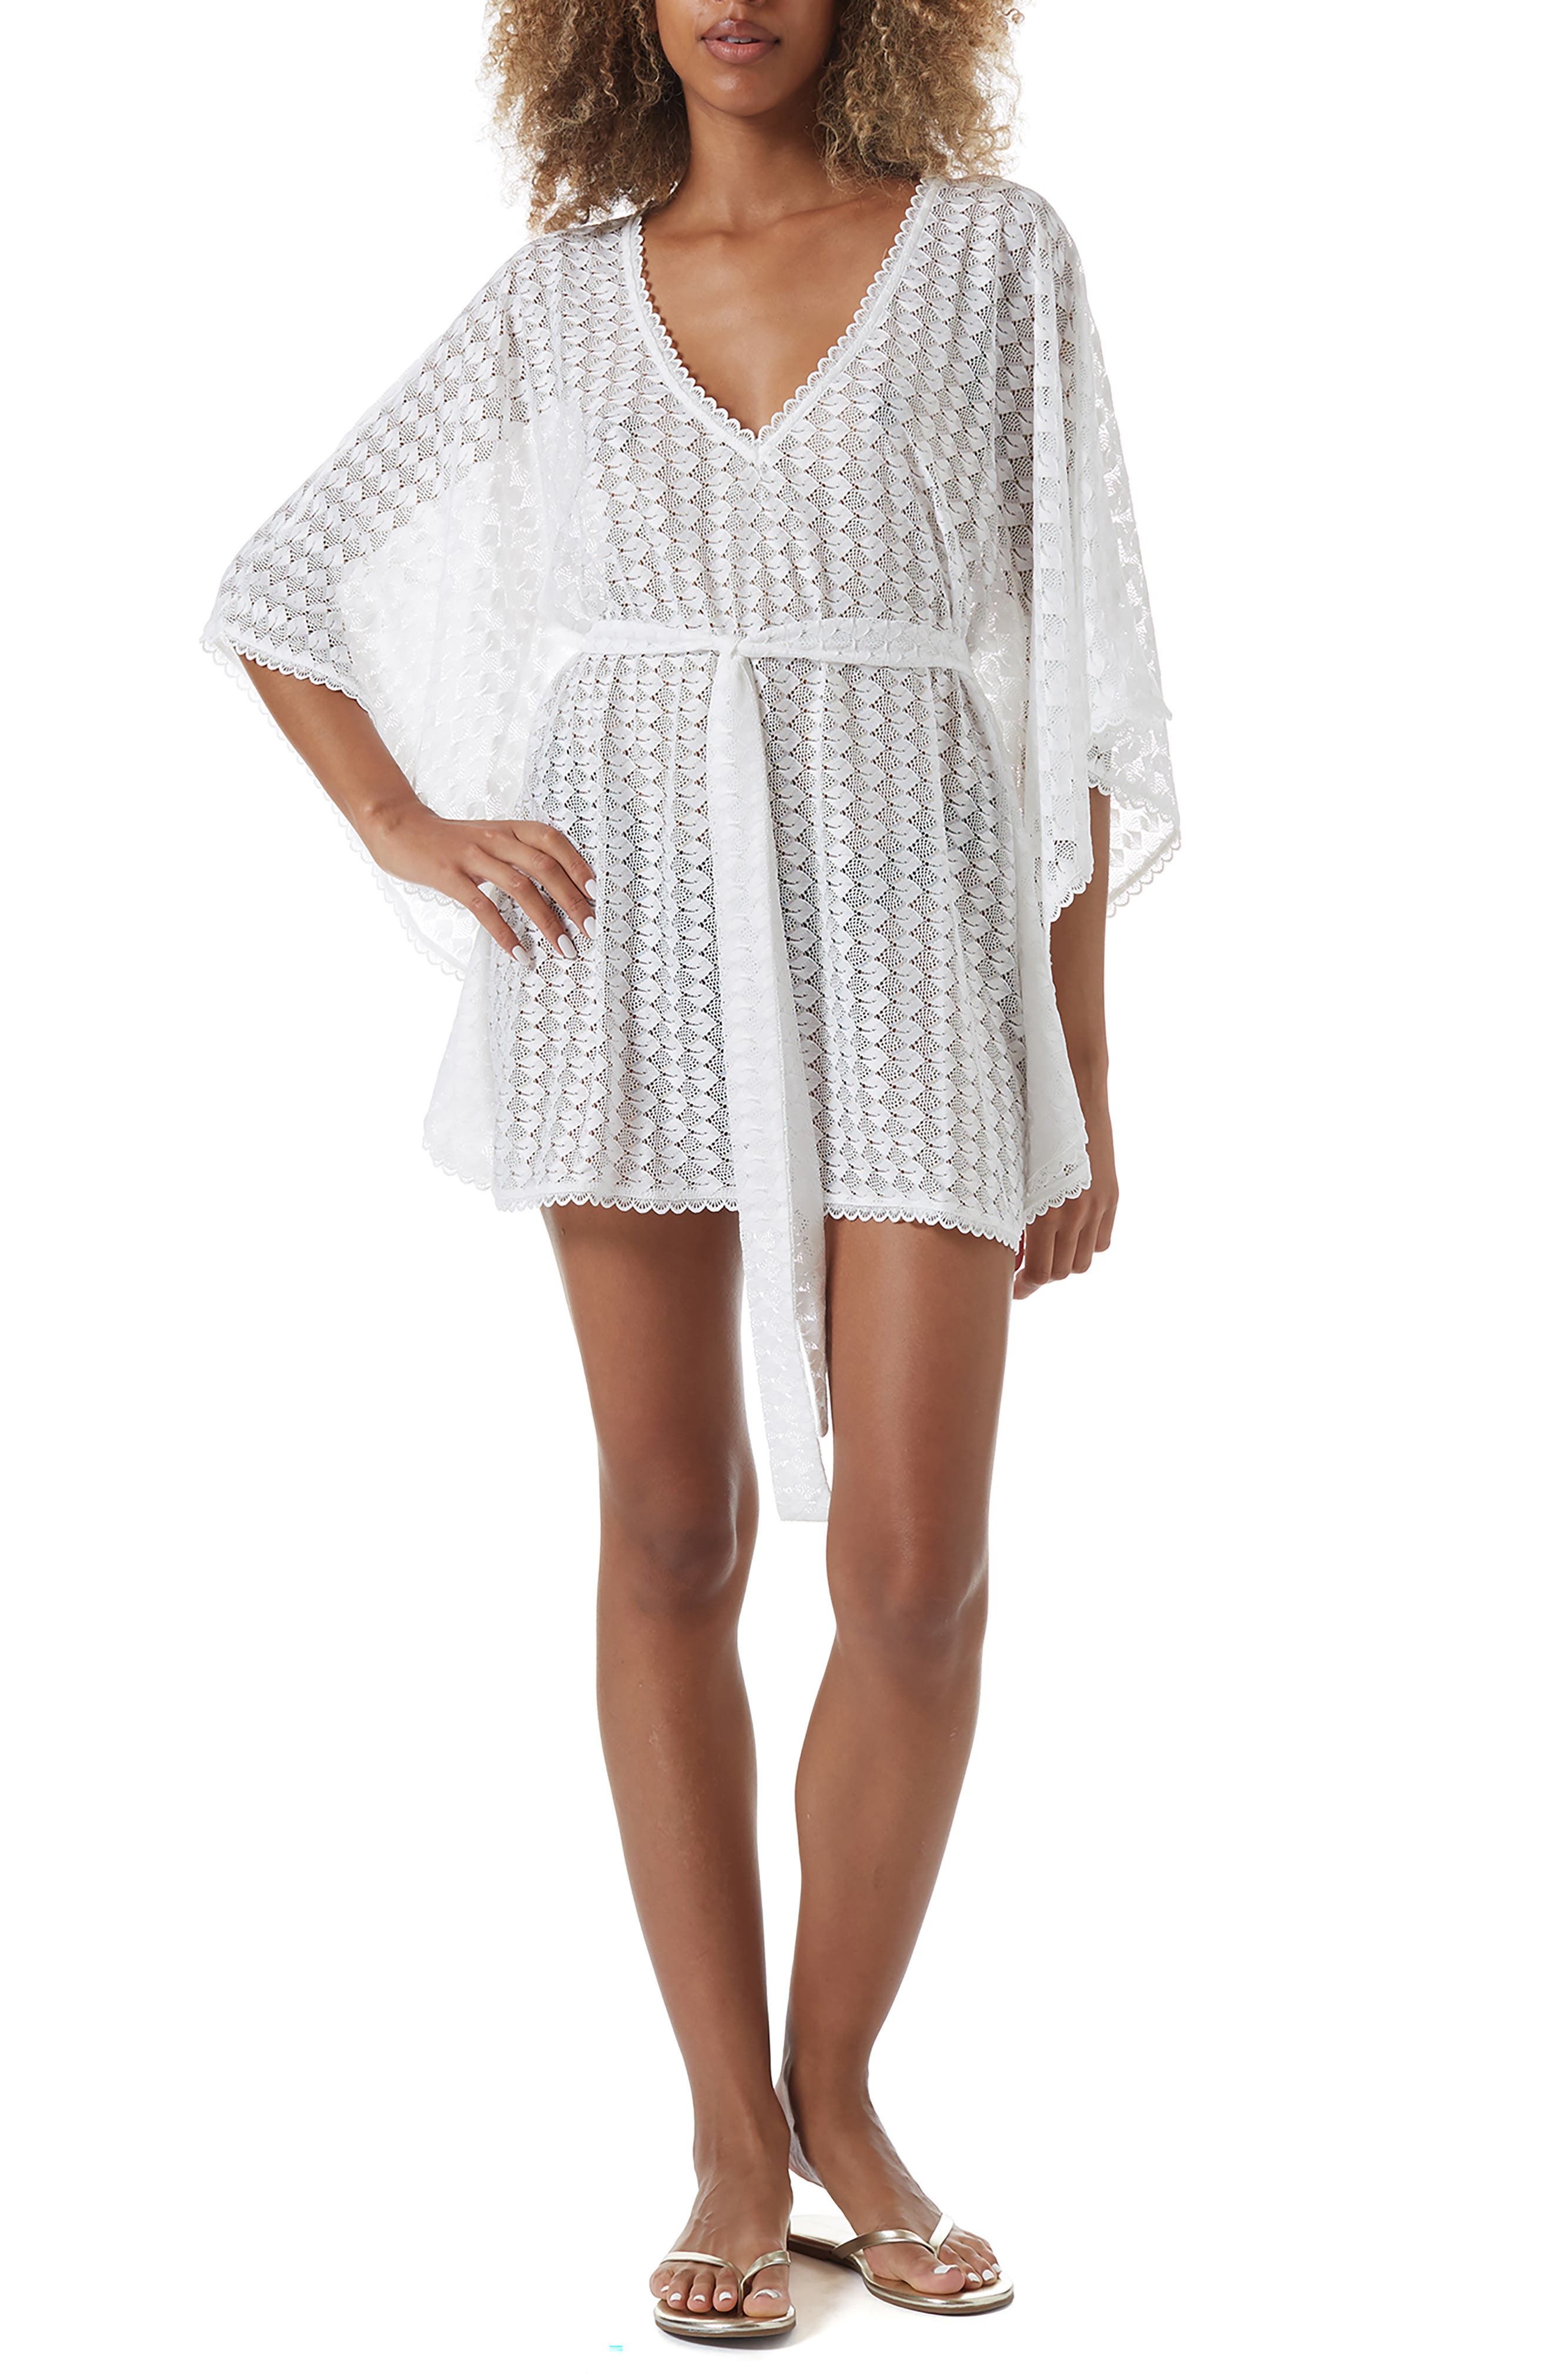 MELISSA ODABASH Beige Crochet Cover Up Beach Dress Kaftan Bikini BNWT S M L 